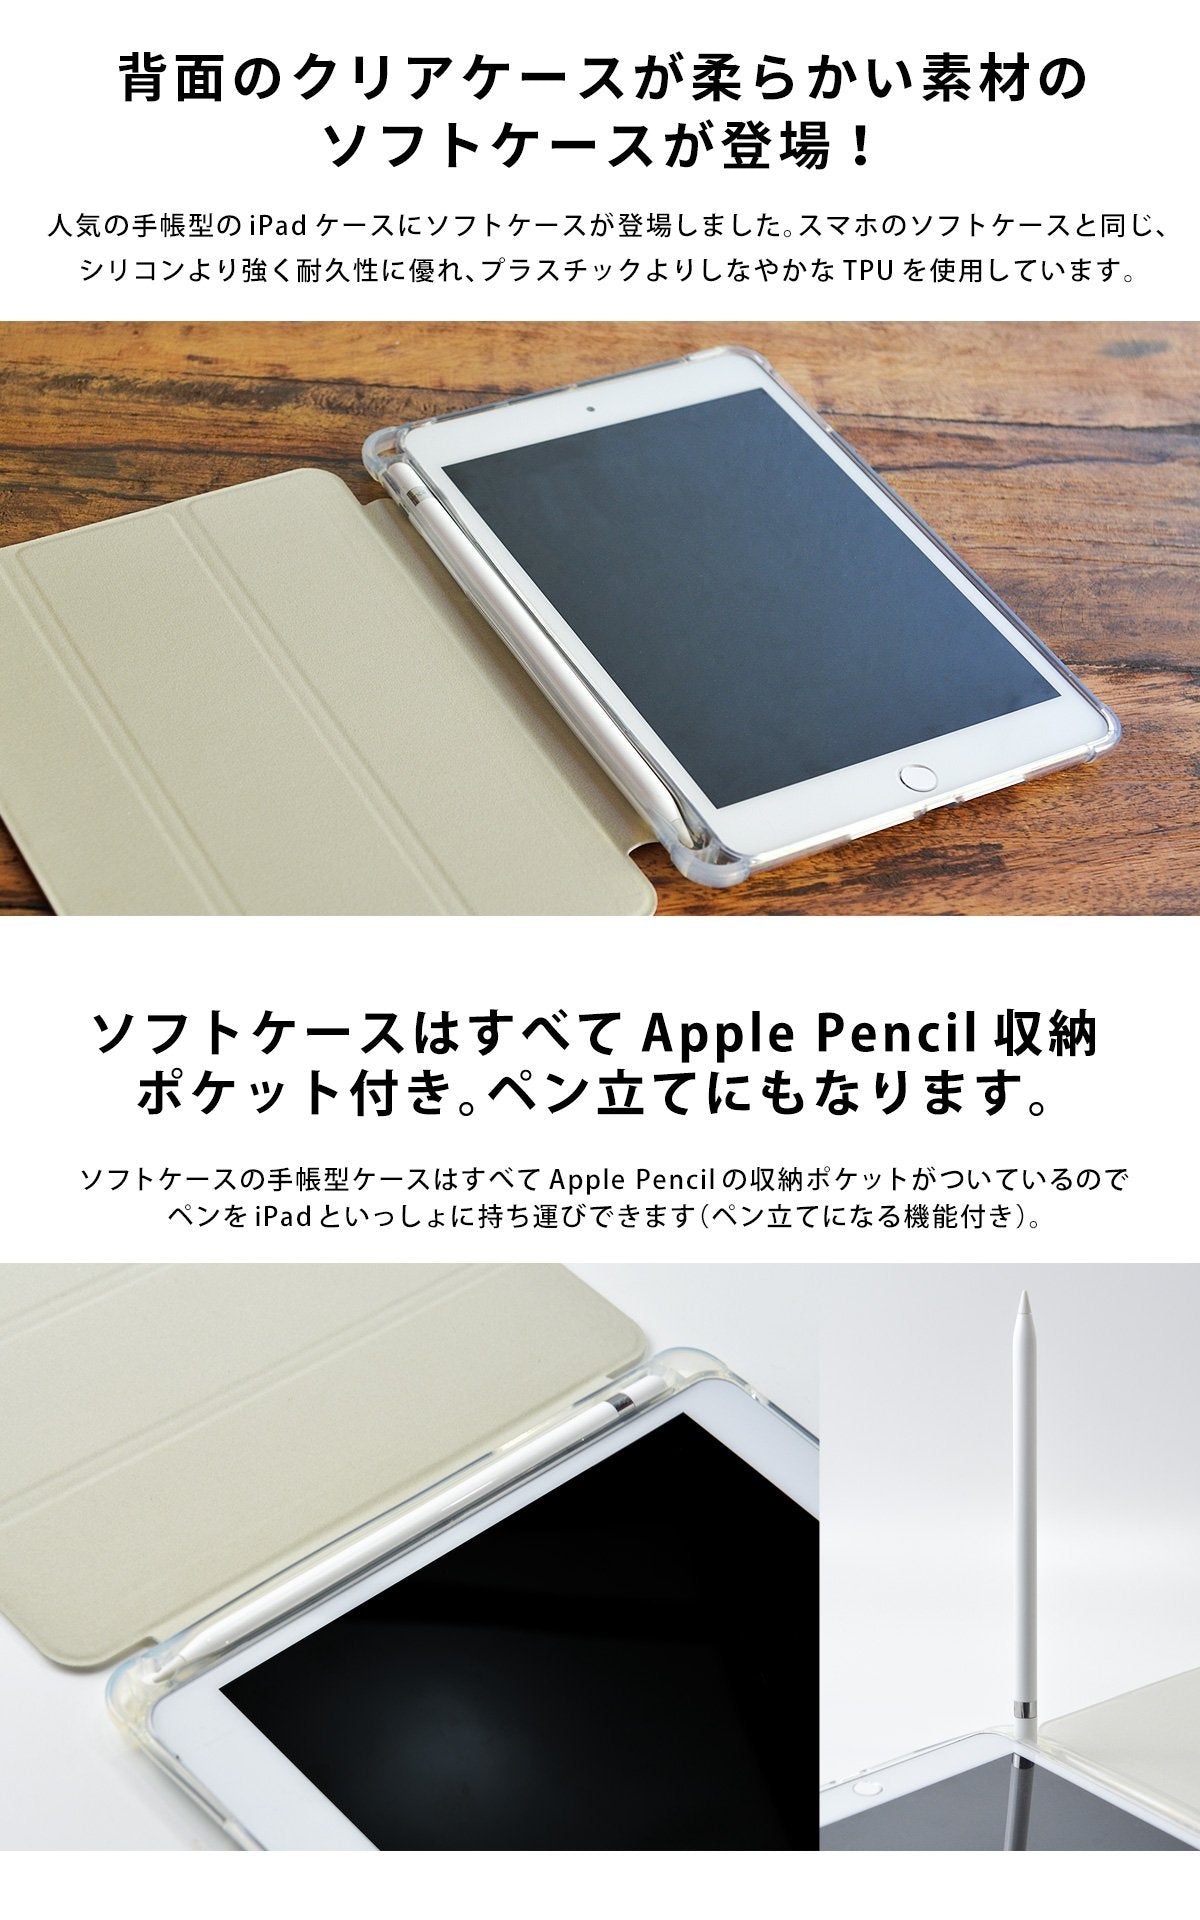 タブレットケース iPadケース 10.8インチ 11インチ 12.9インチ 13インチ インナーケース インナーバッグ PCバッグ パソコンバッグ スリーブポーチ y4